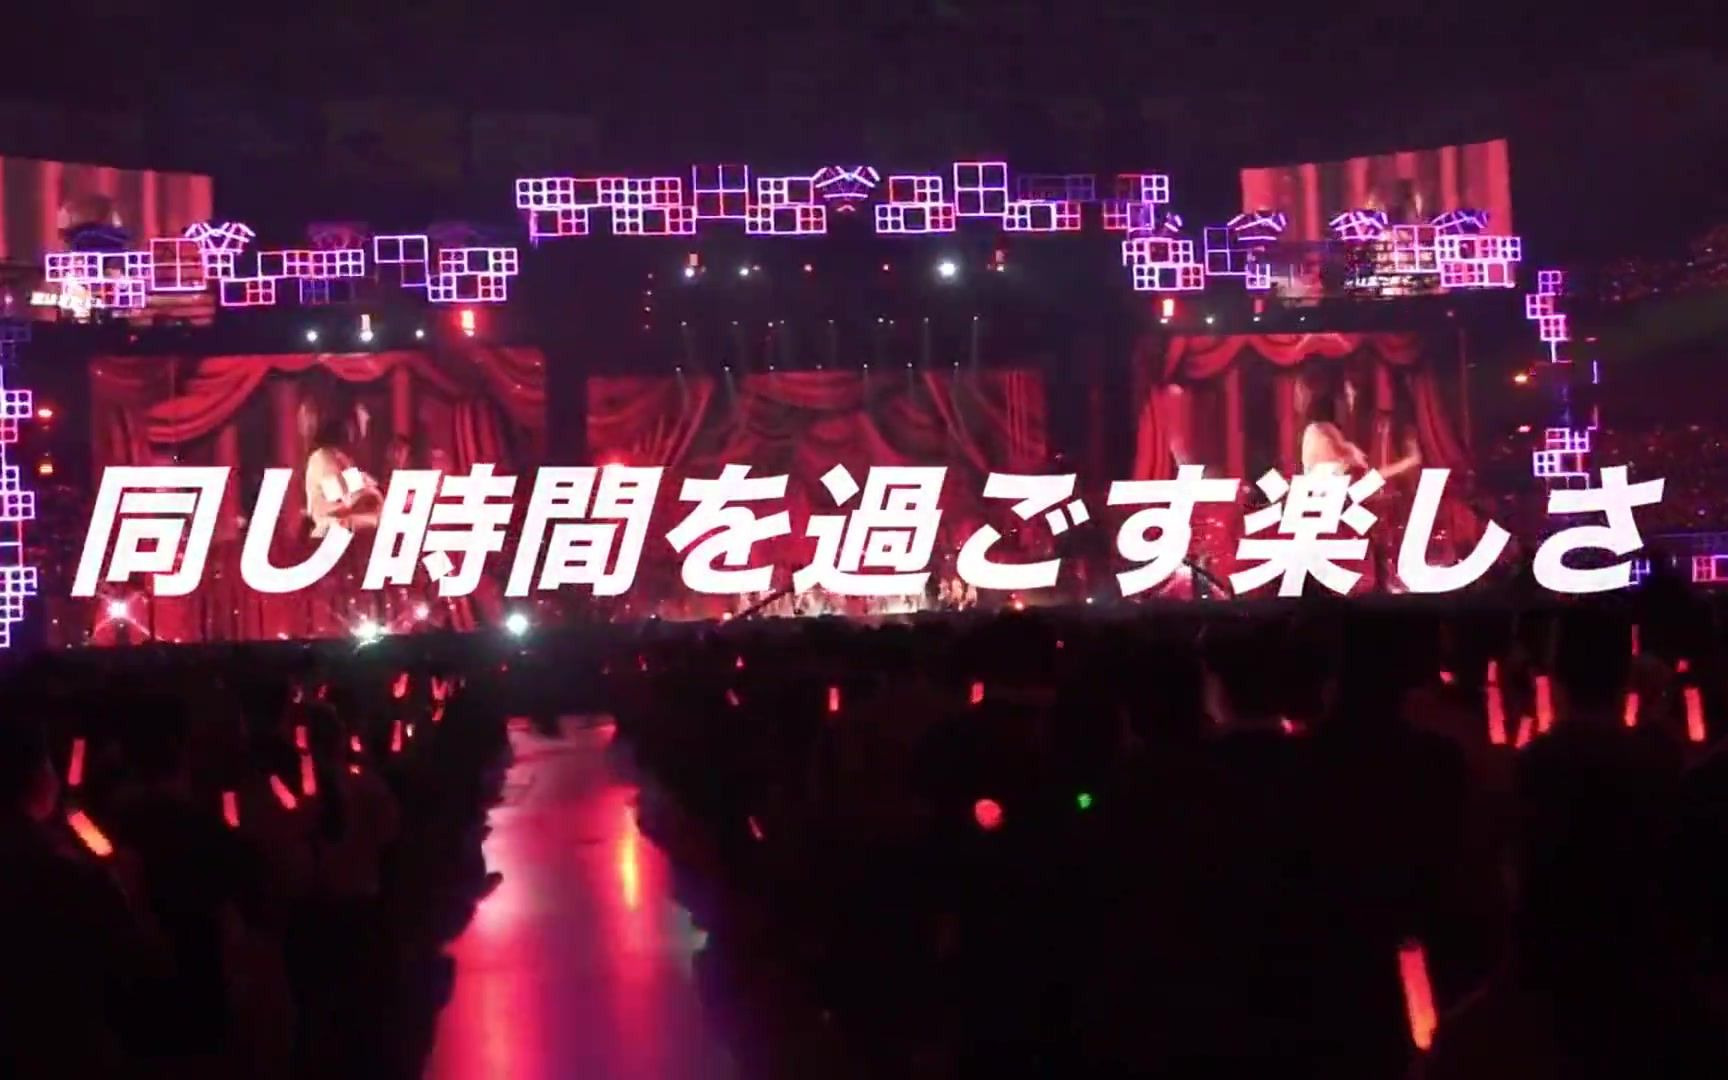 乃木坂46「9th YEAR BIRTHDAY LIVE」開催決定-哔哩哔哩